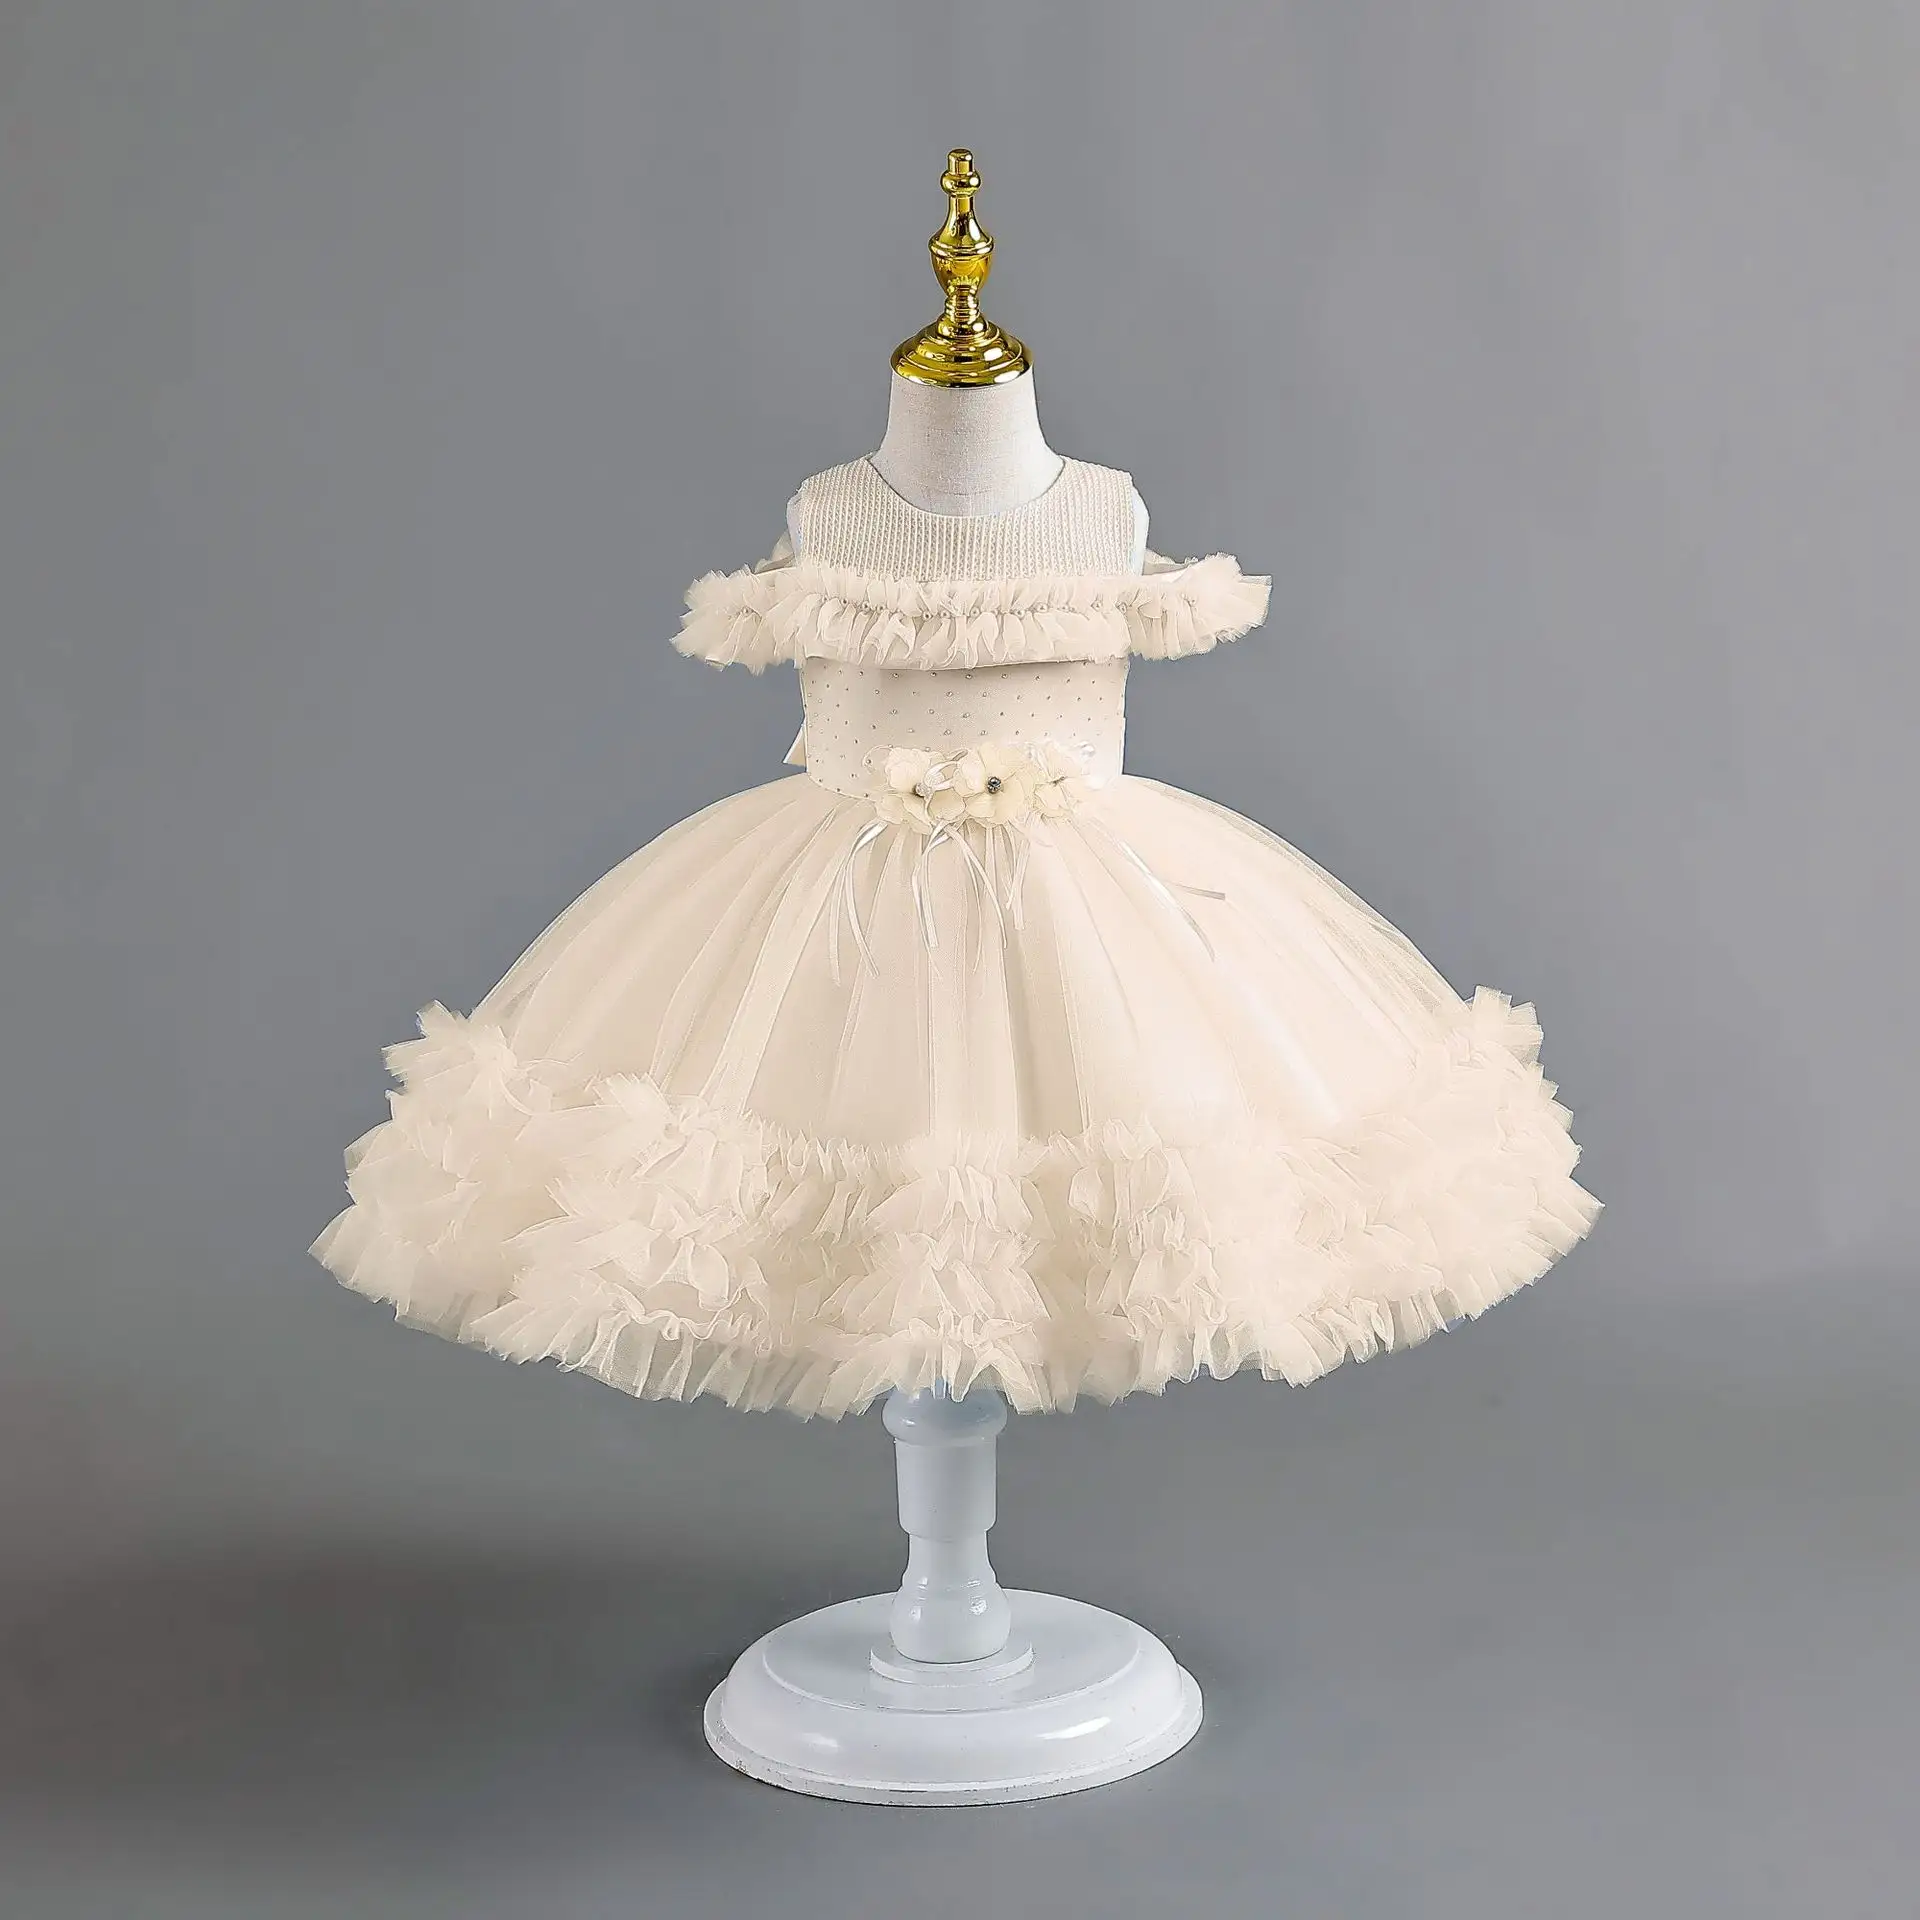 AX150 детская одежда фабричное бальное платье принцессы свадебная одежда высокого качества элегантные вечерние платья